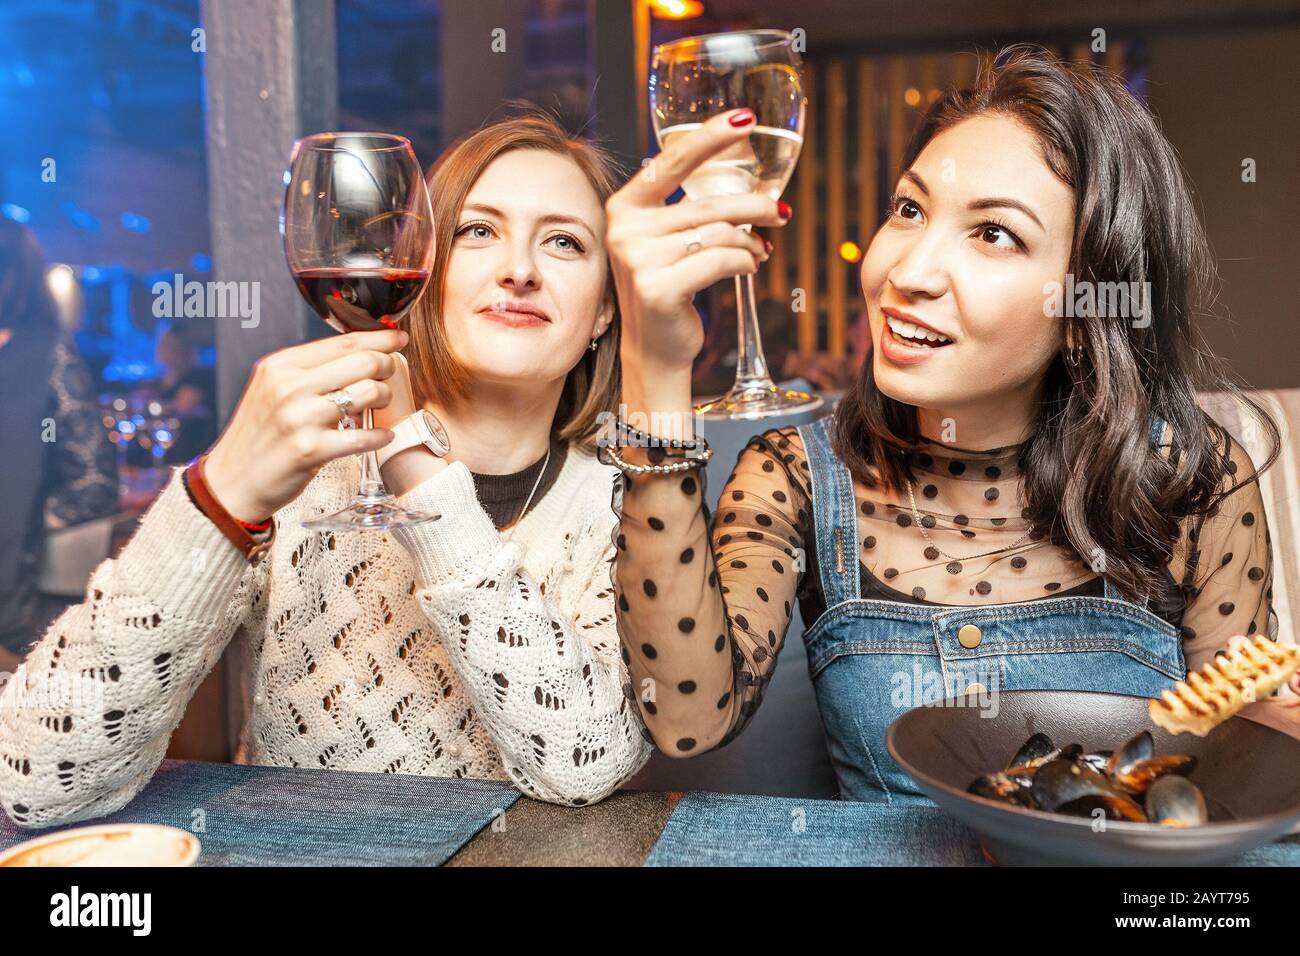 Deux filles amis s'amusent et bavarder tout en buvant un verre de vin dans un restaurant dans une discothèque. Le concept de détente et de frégate Banque D'Images